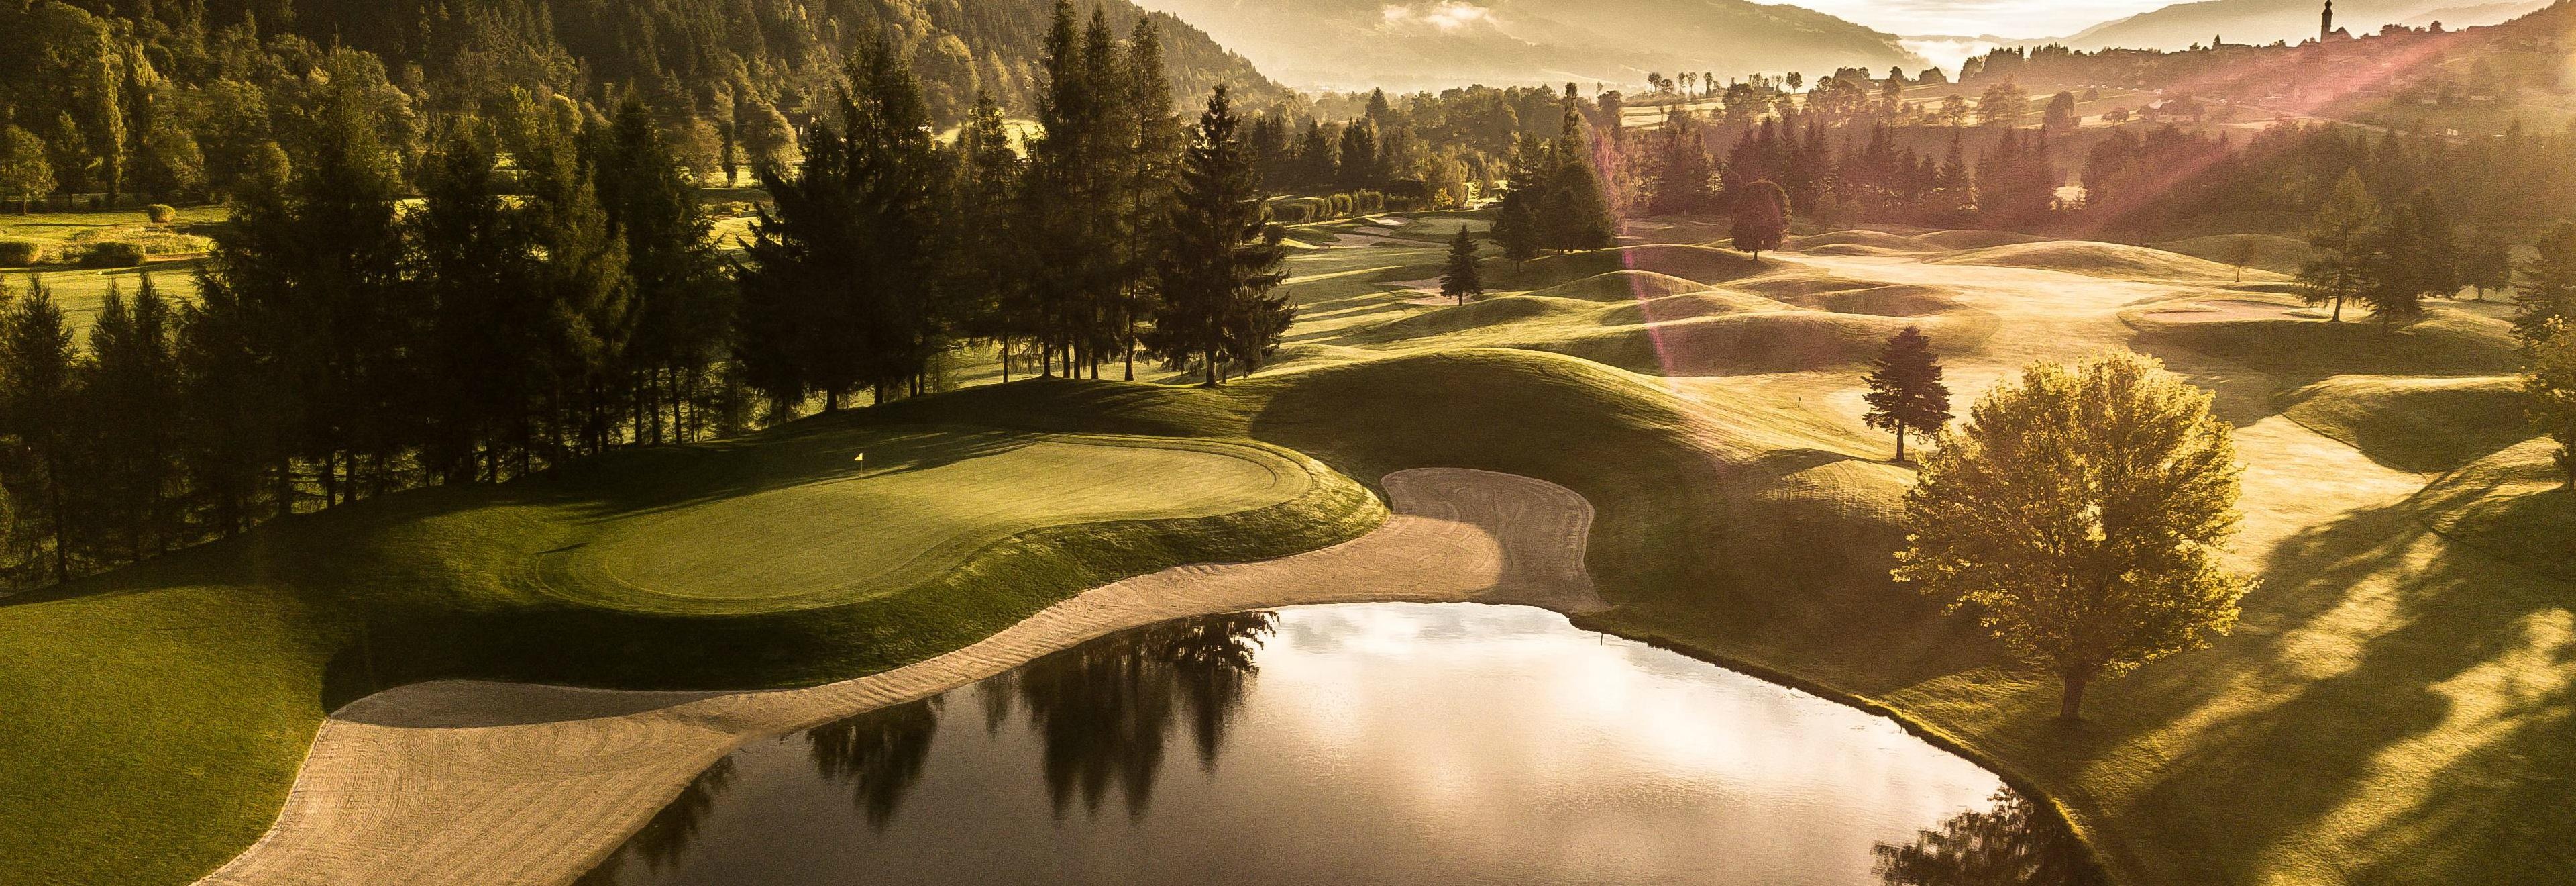 Golf Course: Schladming Dachstein, Austria, Natural terrain, Bent grass, Knee knocker, Par, Divot. 3840x1320 Dual Screen Background.